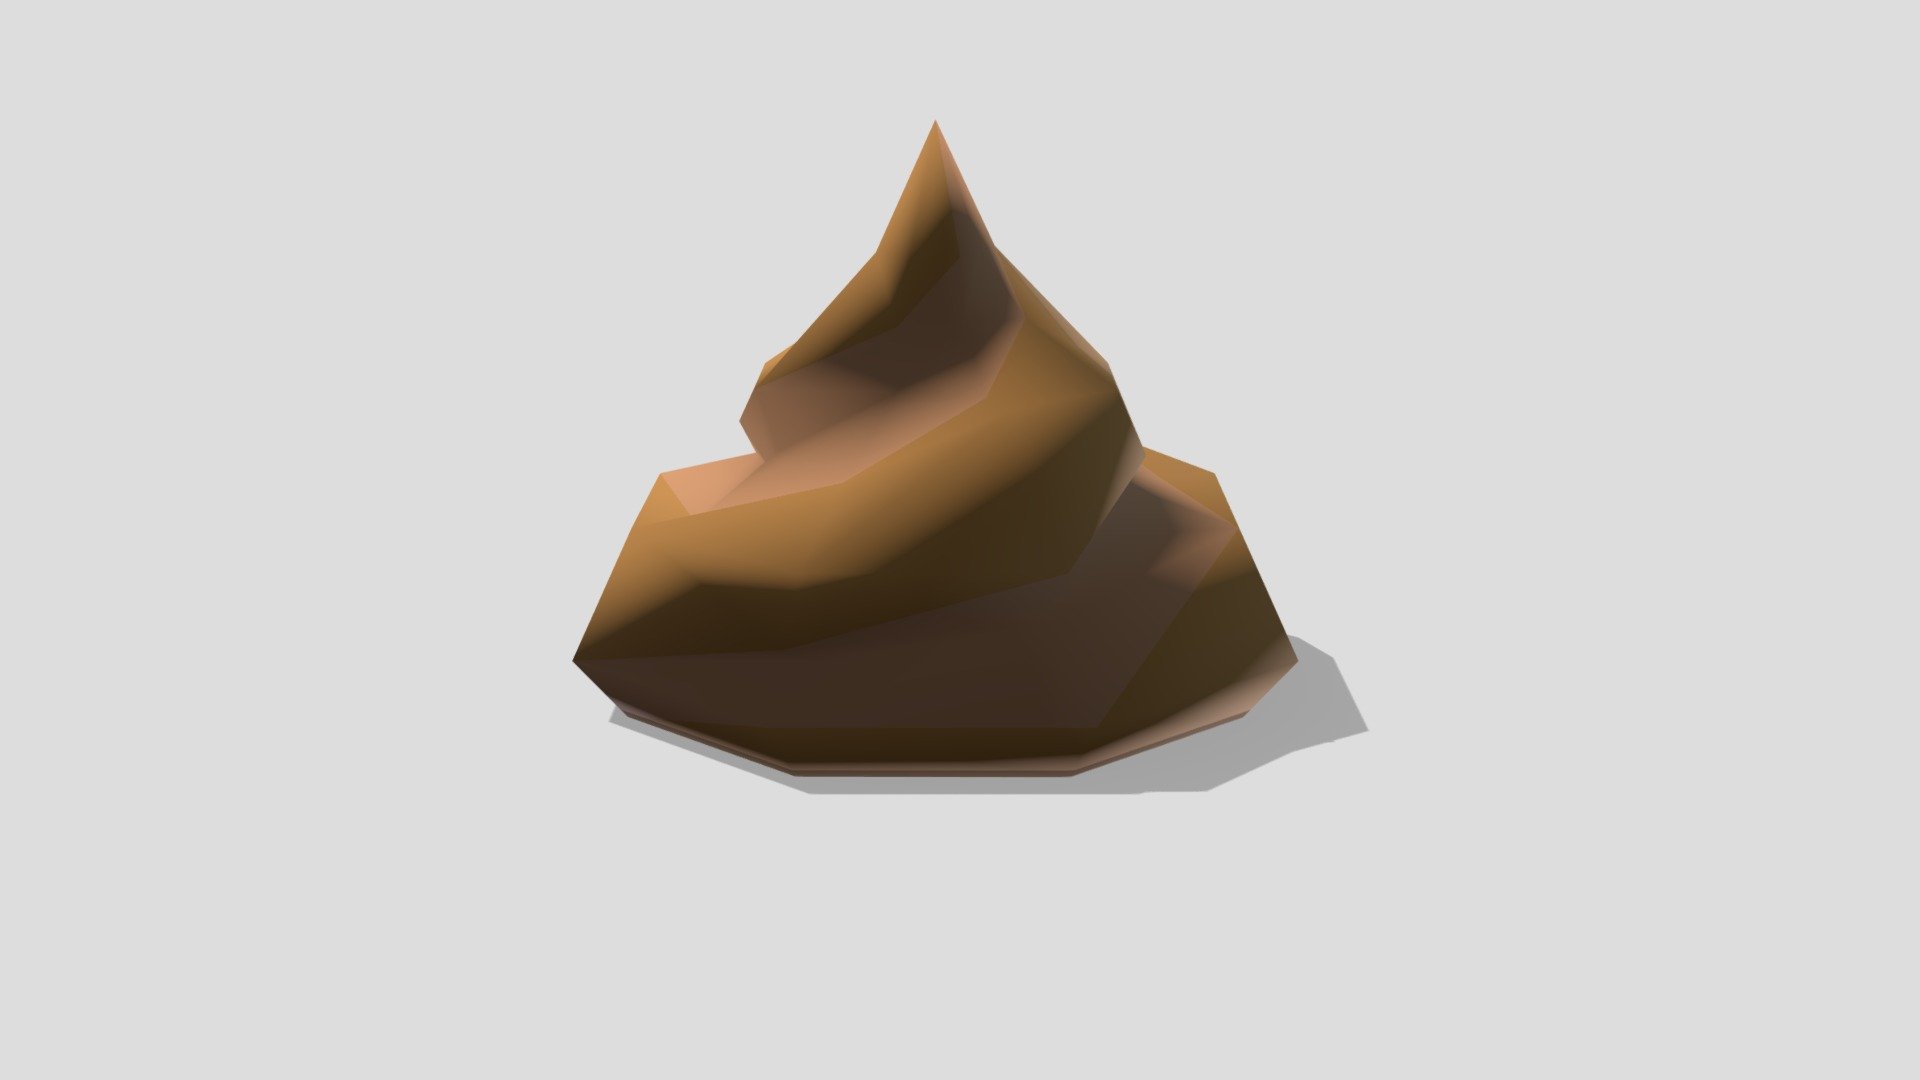 Soyrma_poop - 3D model by Soyrma [9ef8565] - Sketchfab